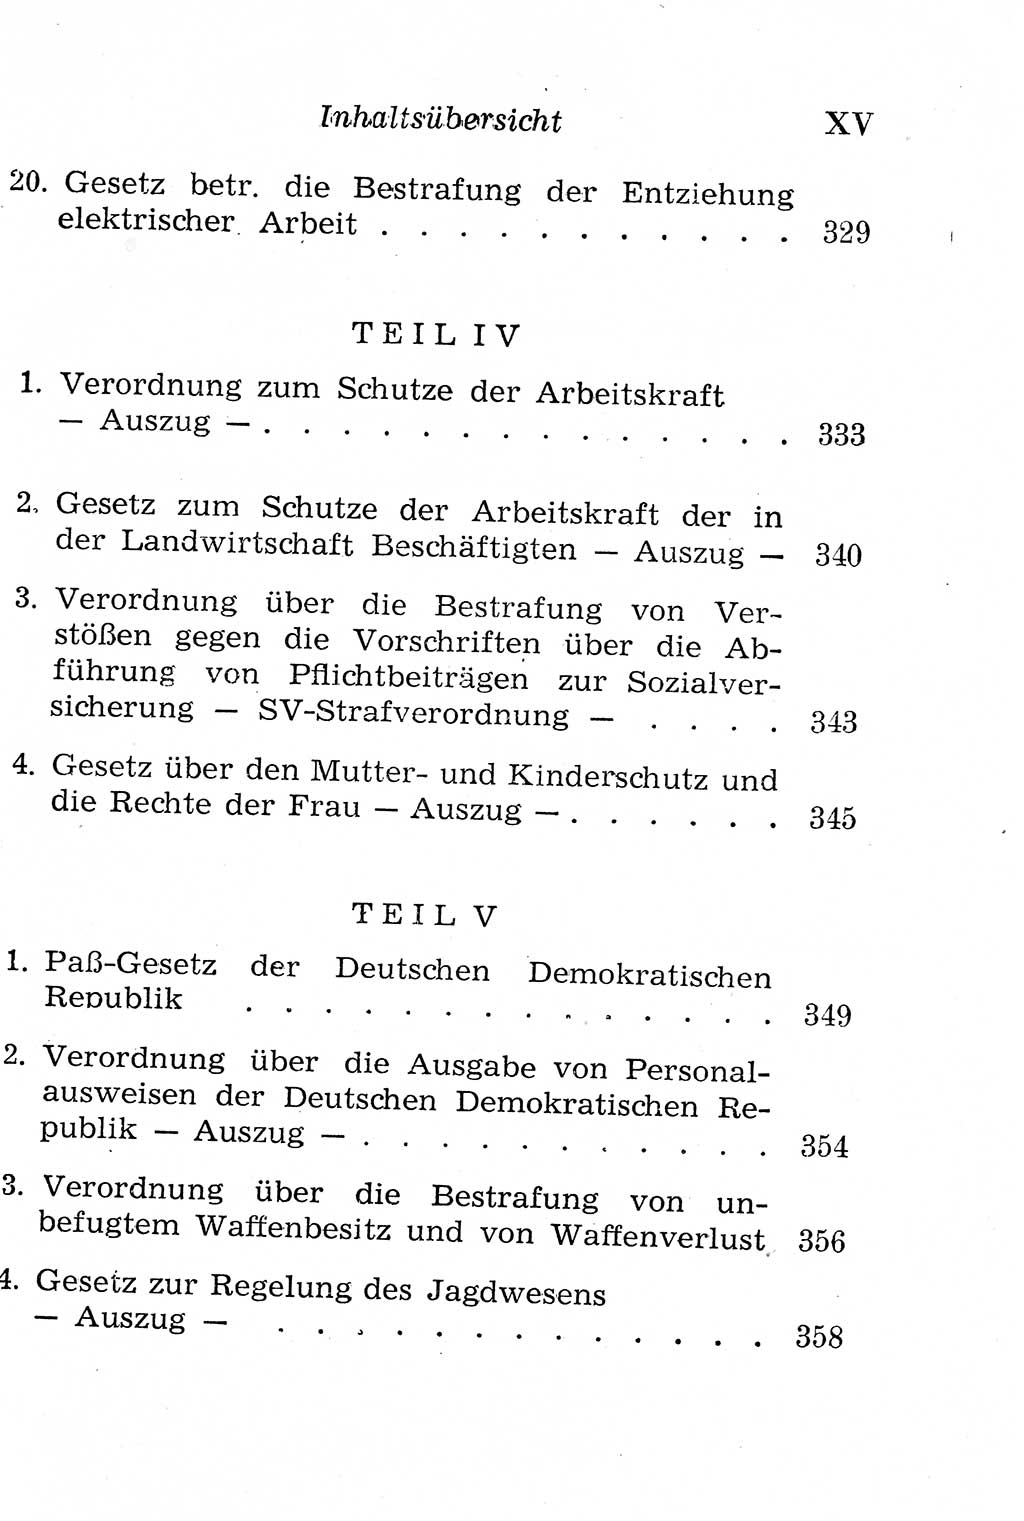 Strafgesetzbuch (StGB) und andere Strafgesetze [Deutsche Demokratische Republik (DDR)] 1958, Seite 15 (Einl. StGB Strafges. DDR 1958, S. 15)